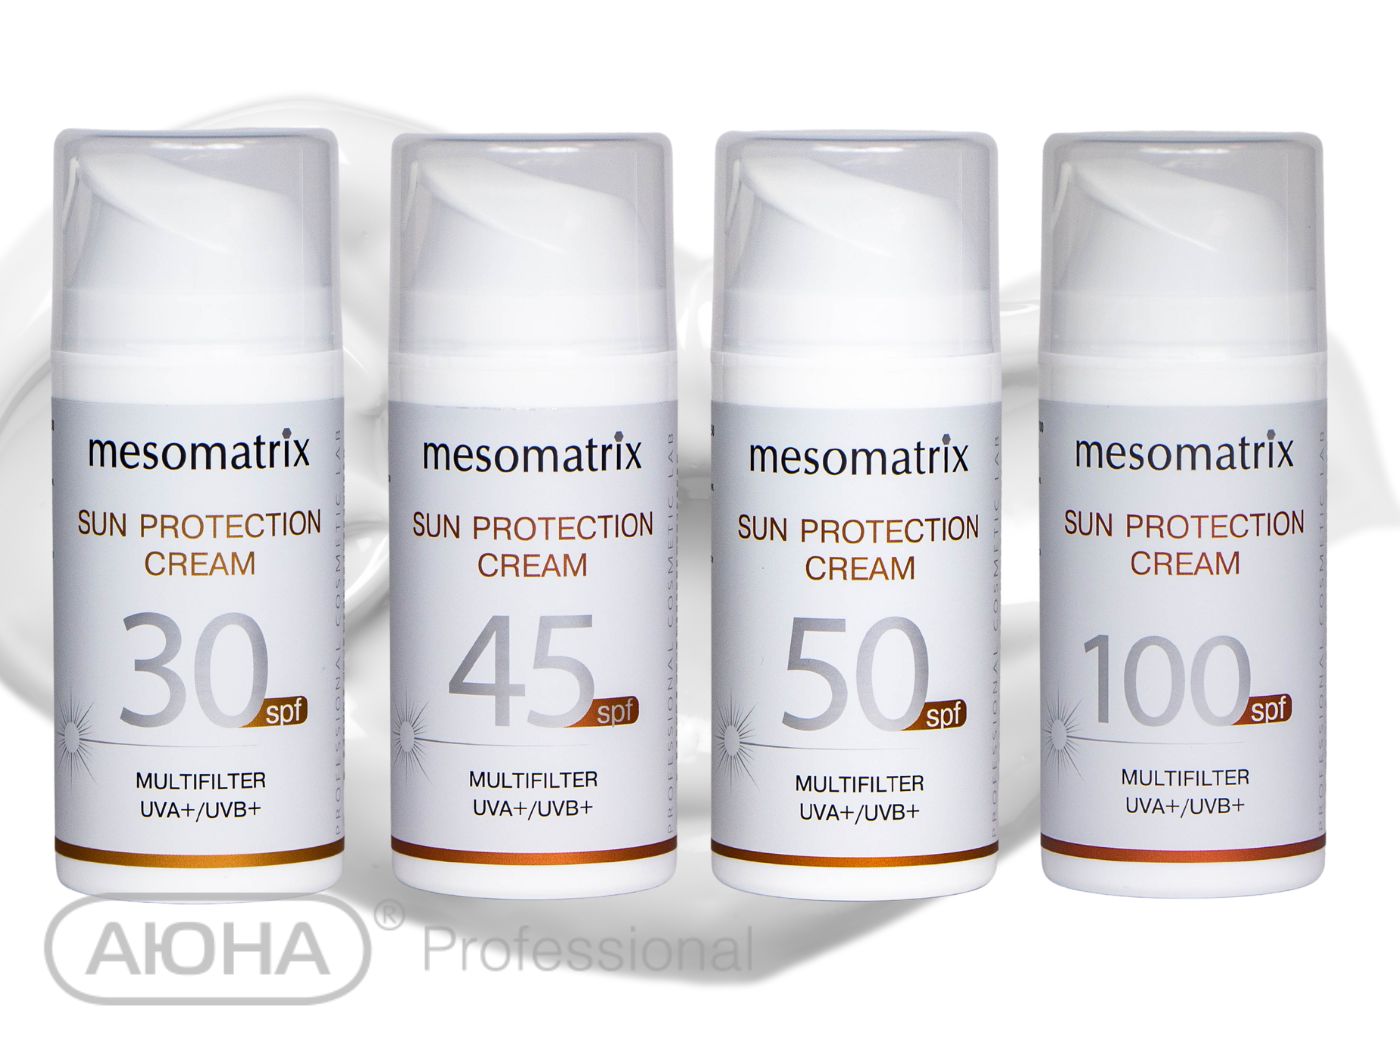 SUN PROTECTION SPF 50, крем солнцезащитный, увлажняющий, антиоксидантный, с гиалуроновой кислотой